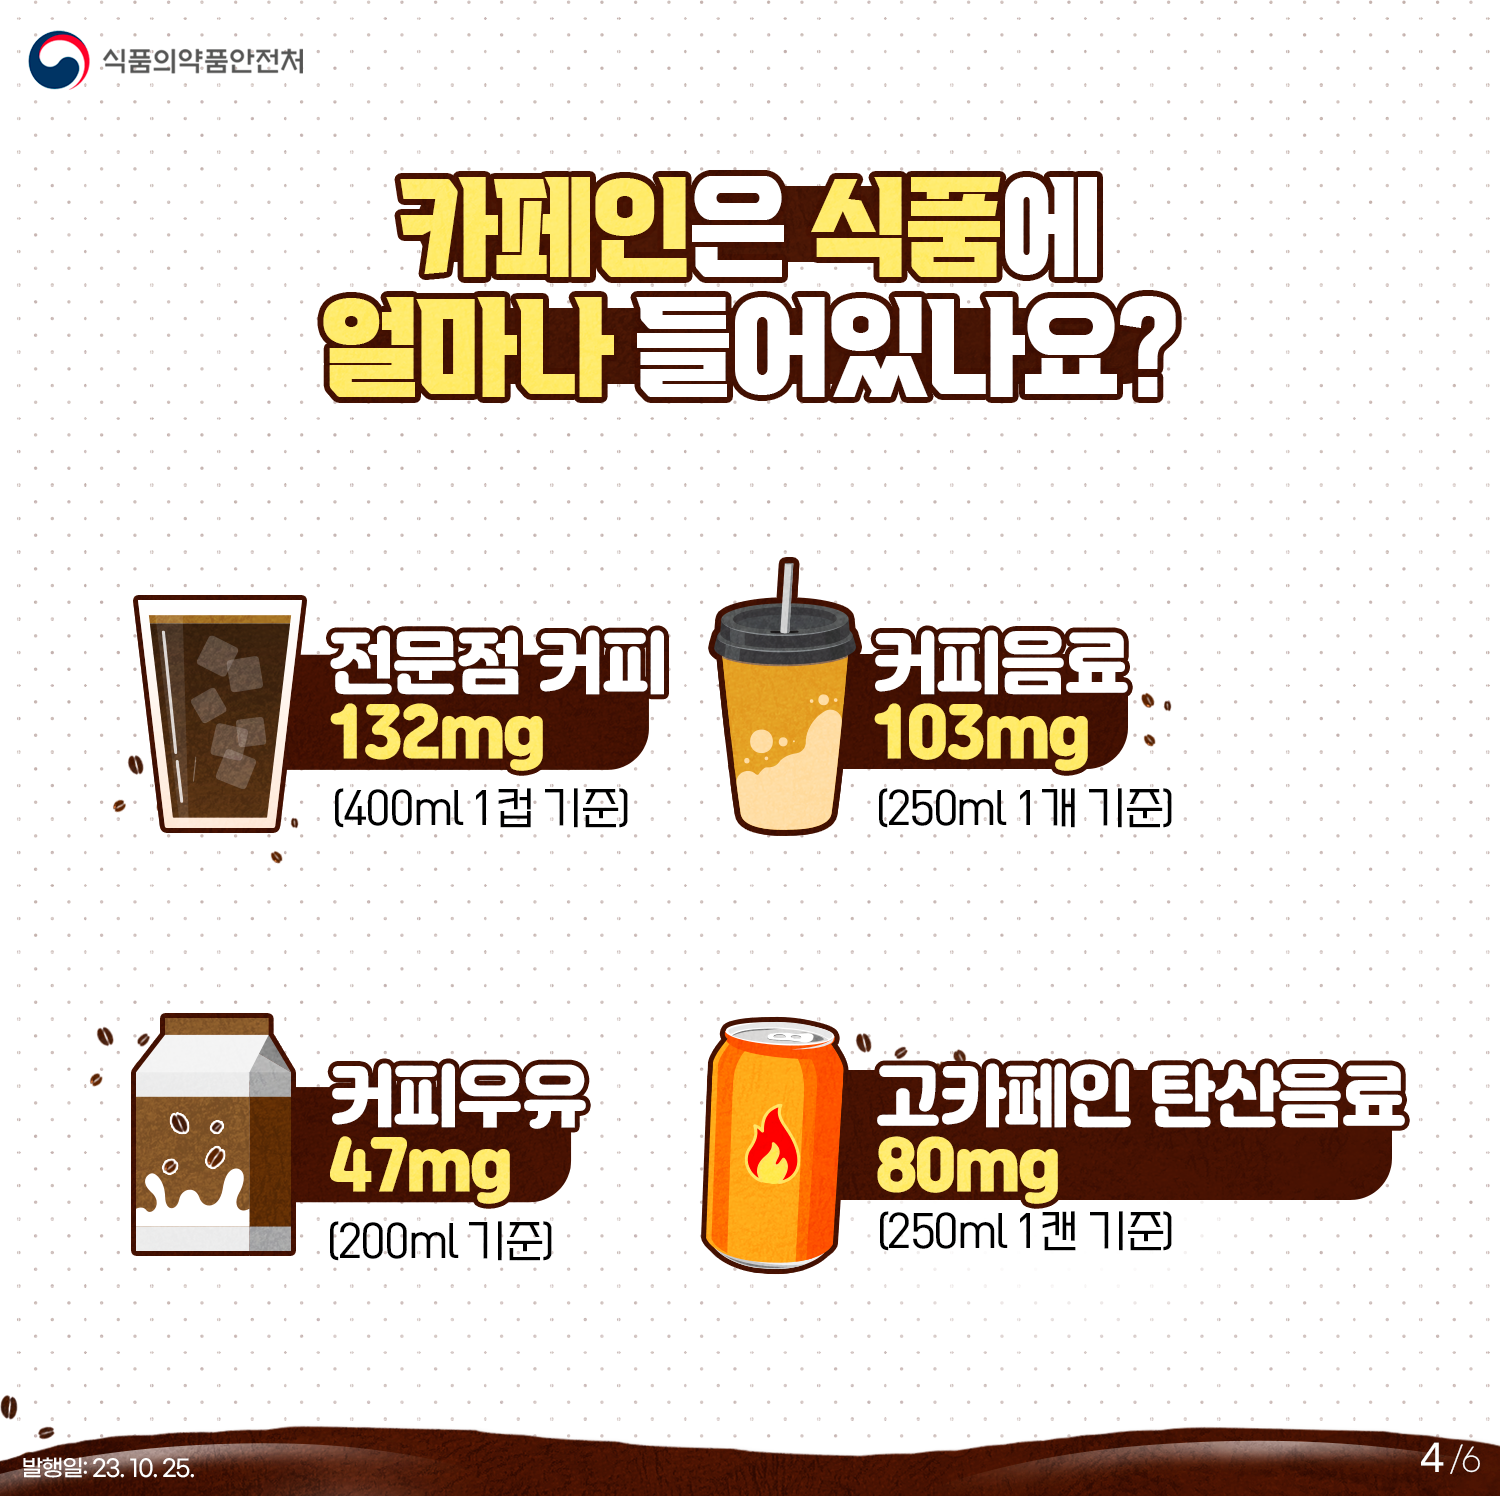 카페인은 식품에 얼마나 들어있나요? 전문점 커피 132mg(400ml1컵 기준) 커피음료103mg(250ml 1개 기준) 커피우유 47mg(200ml 기준) 고카페인 탄산음료 80mg(250ml 1캔 기준)